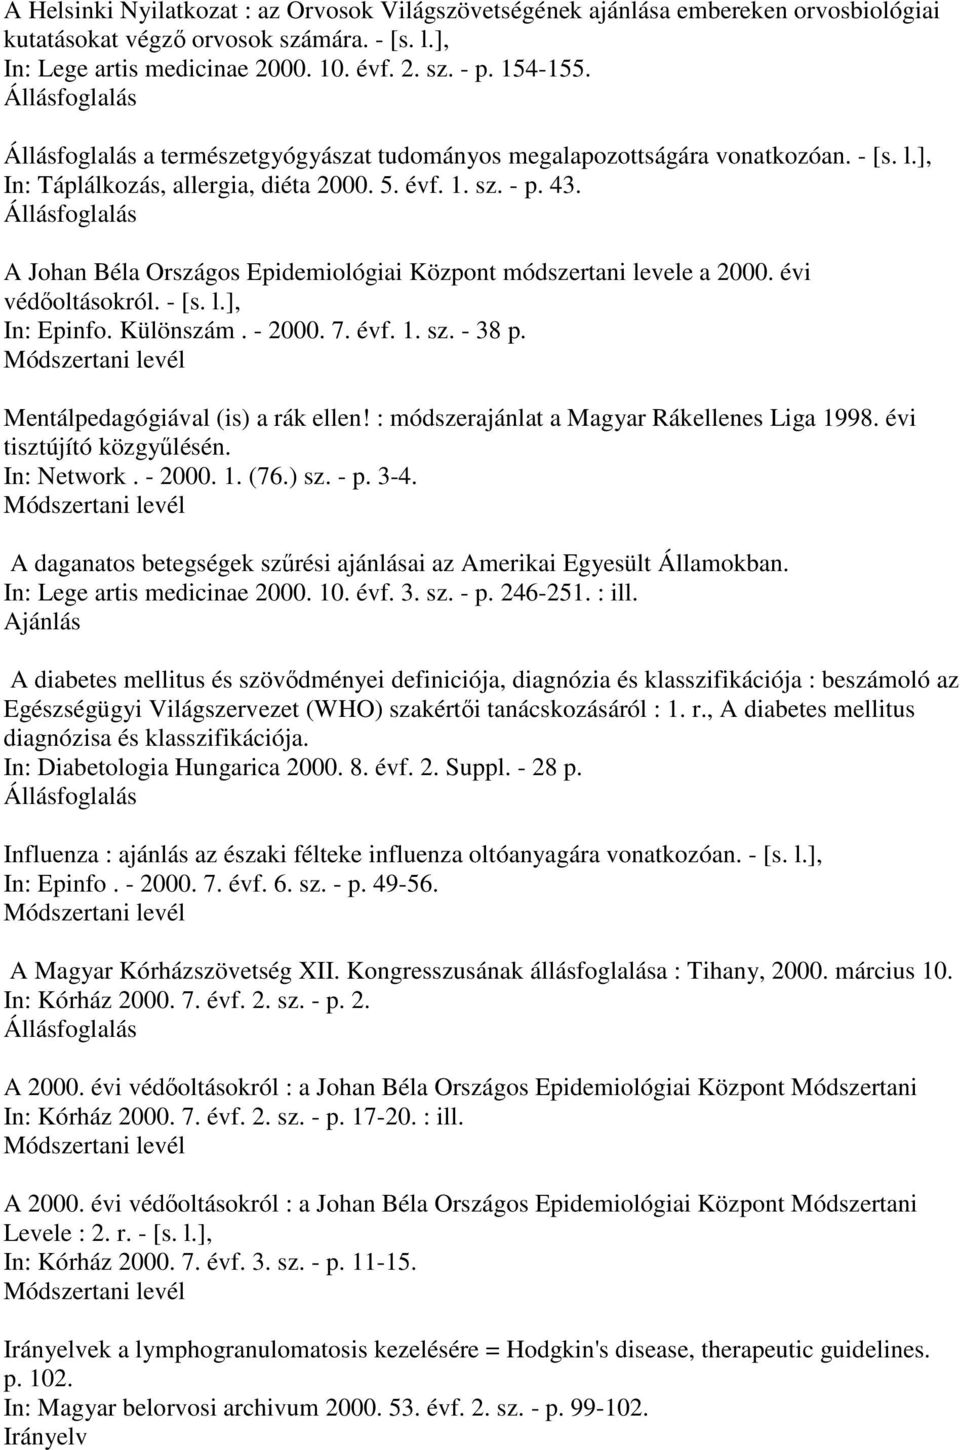 A Johan Béla Országos Epidemiológiai Központ módszertani levele a 2000. évi védıoltásokról. - [s. l.], In: Epinfo. Különszám. - 2000. 7. évf. 1. sz. - 38 p. Mentálpedagógiával (is) a rák ellen!